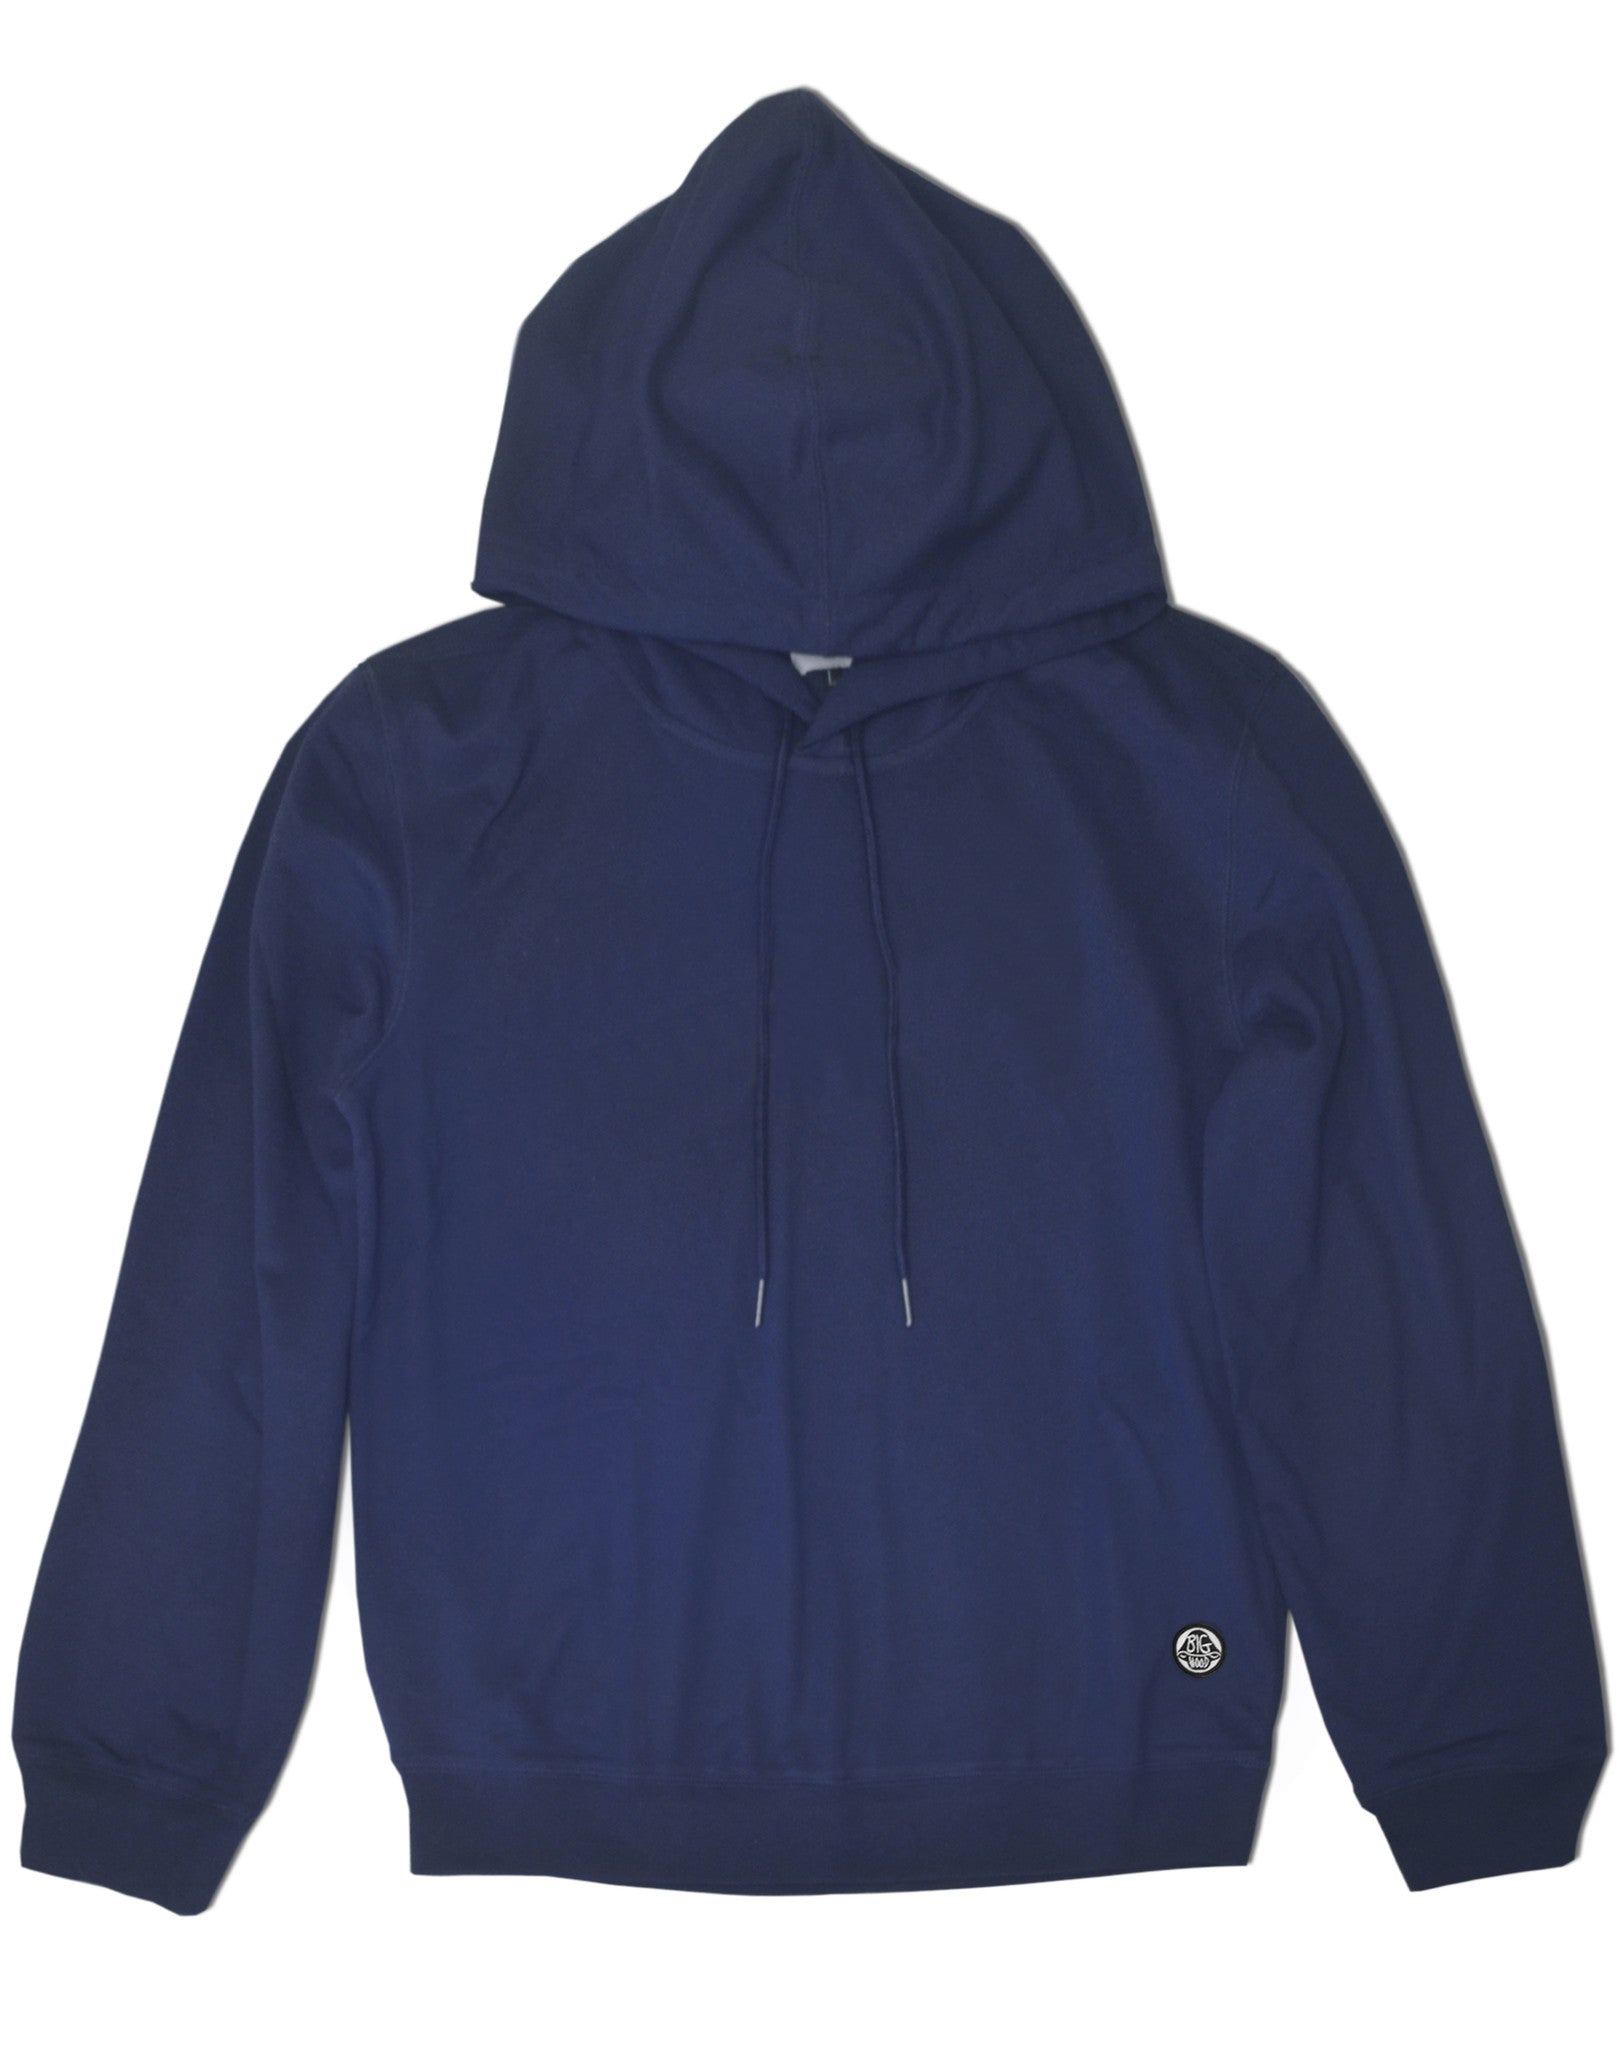 navy blue fleece hoodie